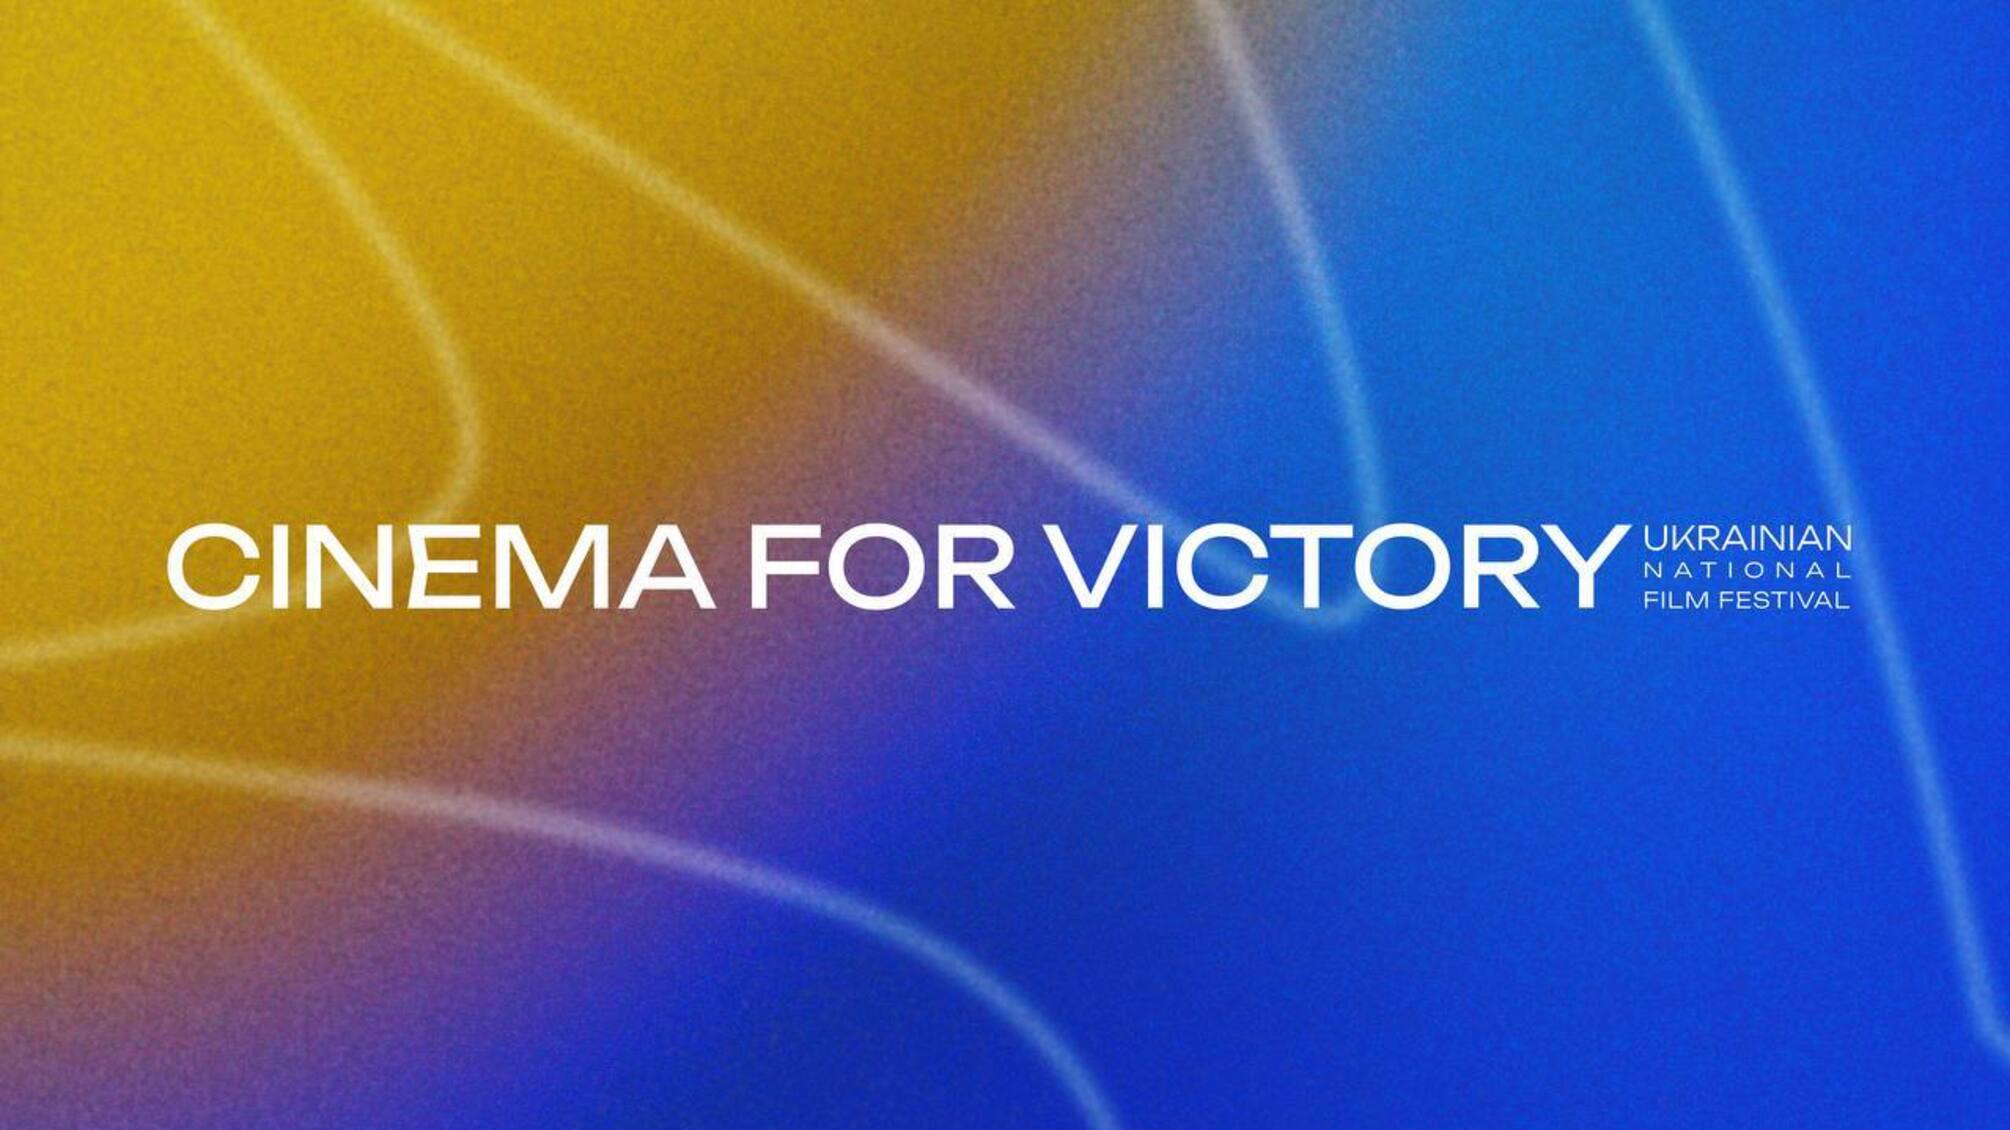 Шон Пенн, Лієв Шрайбер та Сергій Михальчук: хто увійшов до складу журі кінофестивалю 'Cinema for Victory'